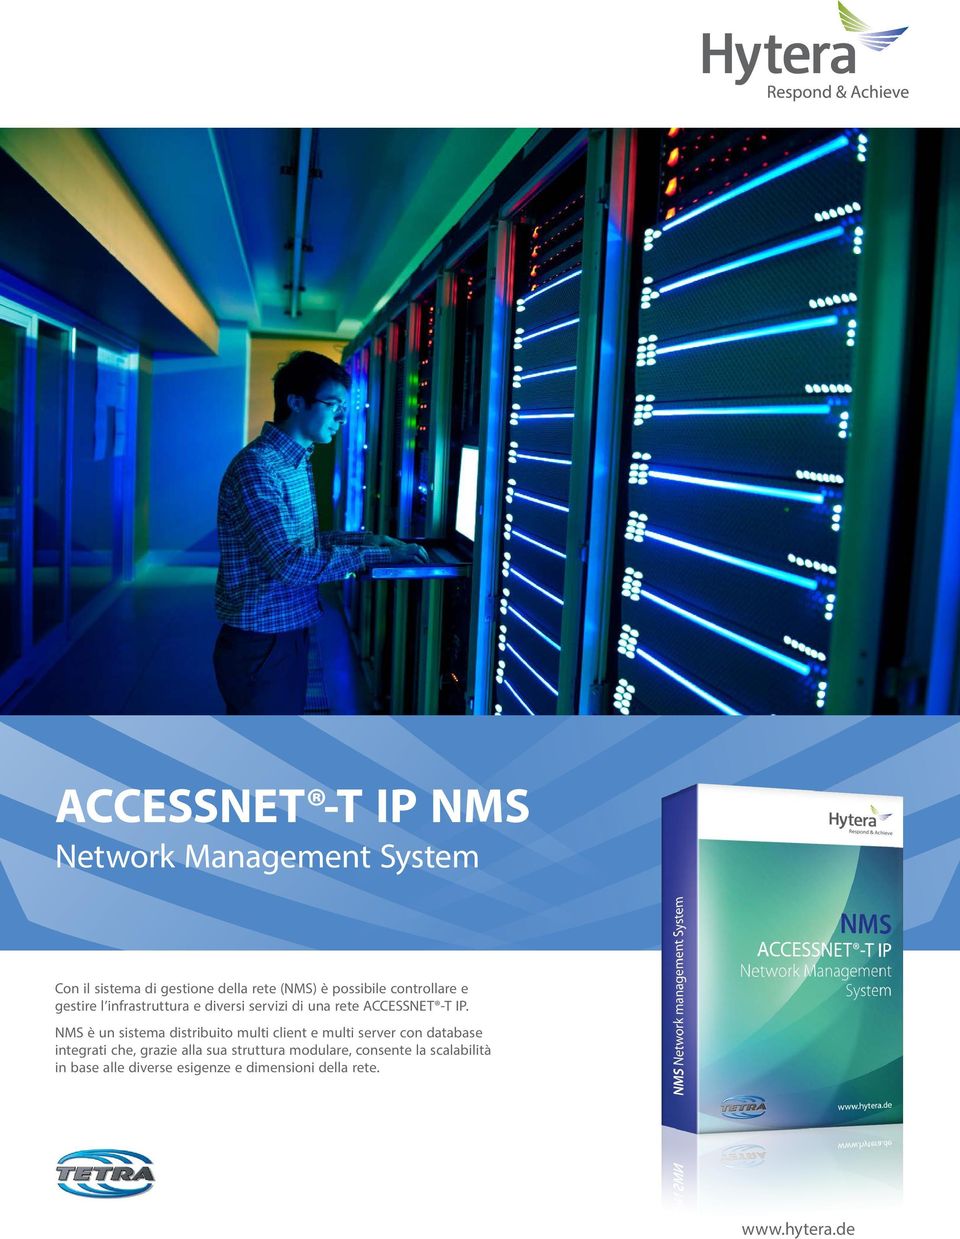 NMS è un sistema distribuito multi client e multi server con database integrati che, grazie alla